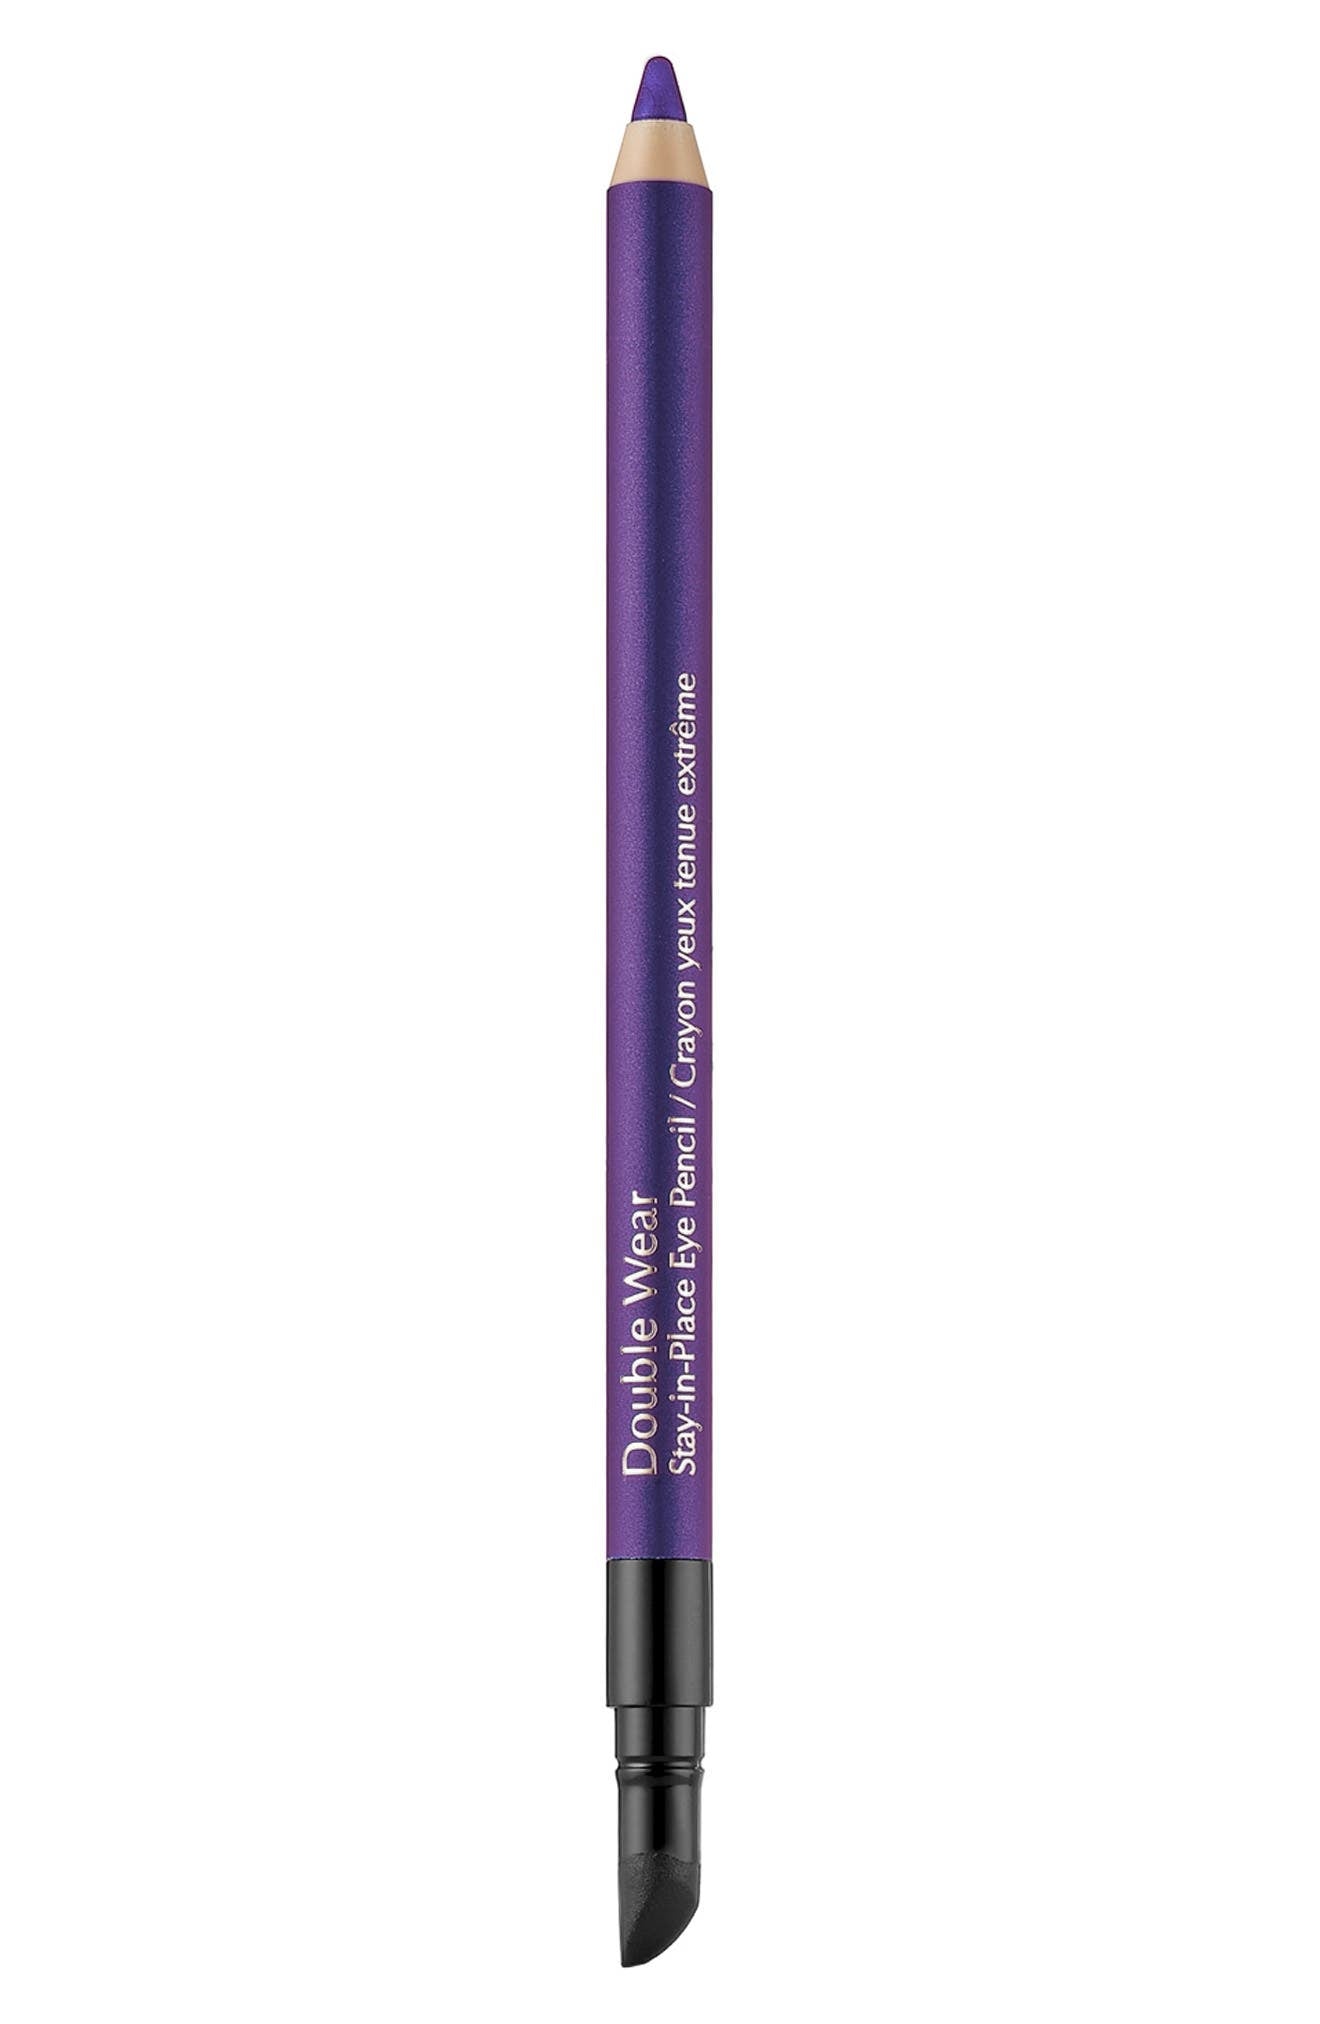 Estee Lauder Double Wear Stay-in-Place Eye Pencil